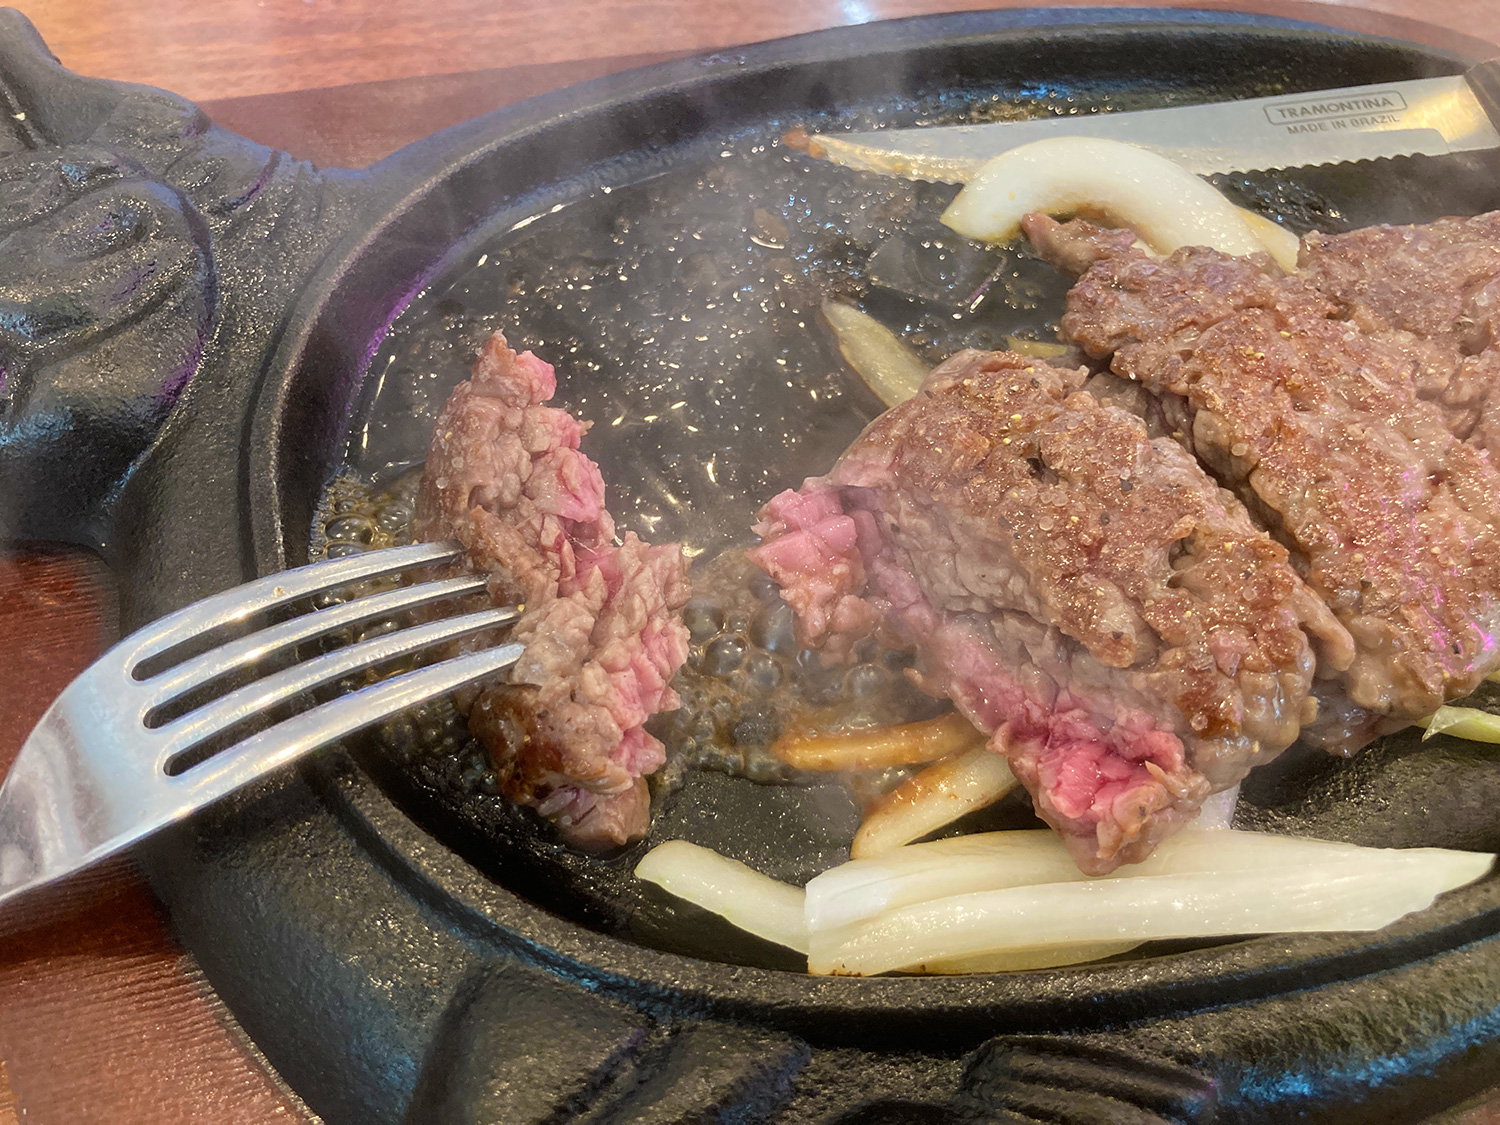 ステーキハウス88Jr.『イオンモール沖縄ライカム店』でJr.ステーキとカットステーキを食べてきた。